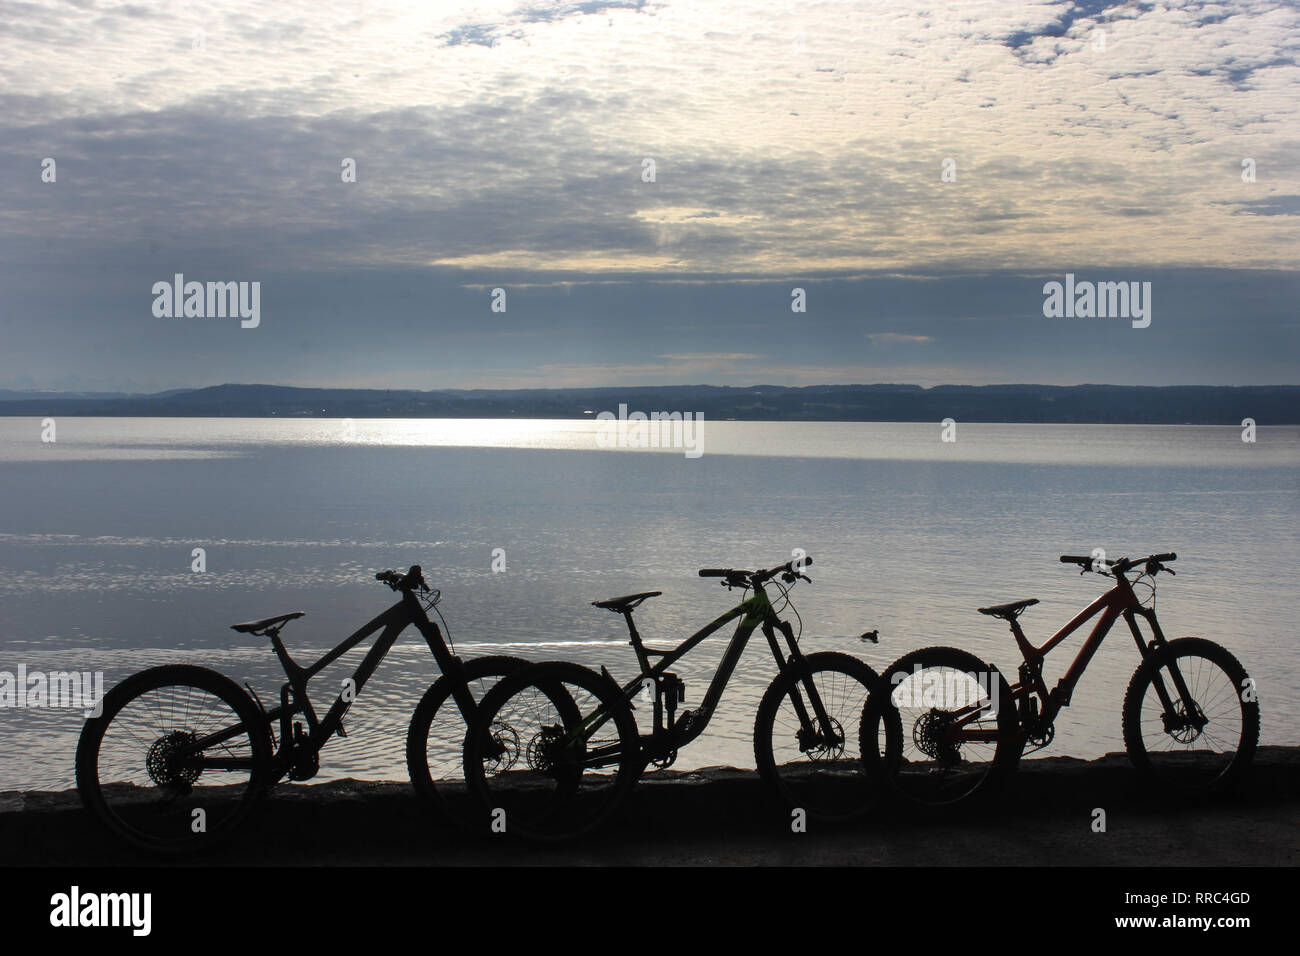 Gruppe von drei Mountainbike-Silhouetten vor dem Ammersee, bayern, Herrsching. Horizont über dem Wasser. Stockfoto